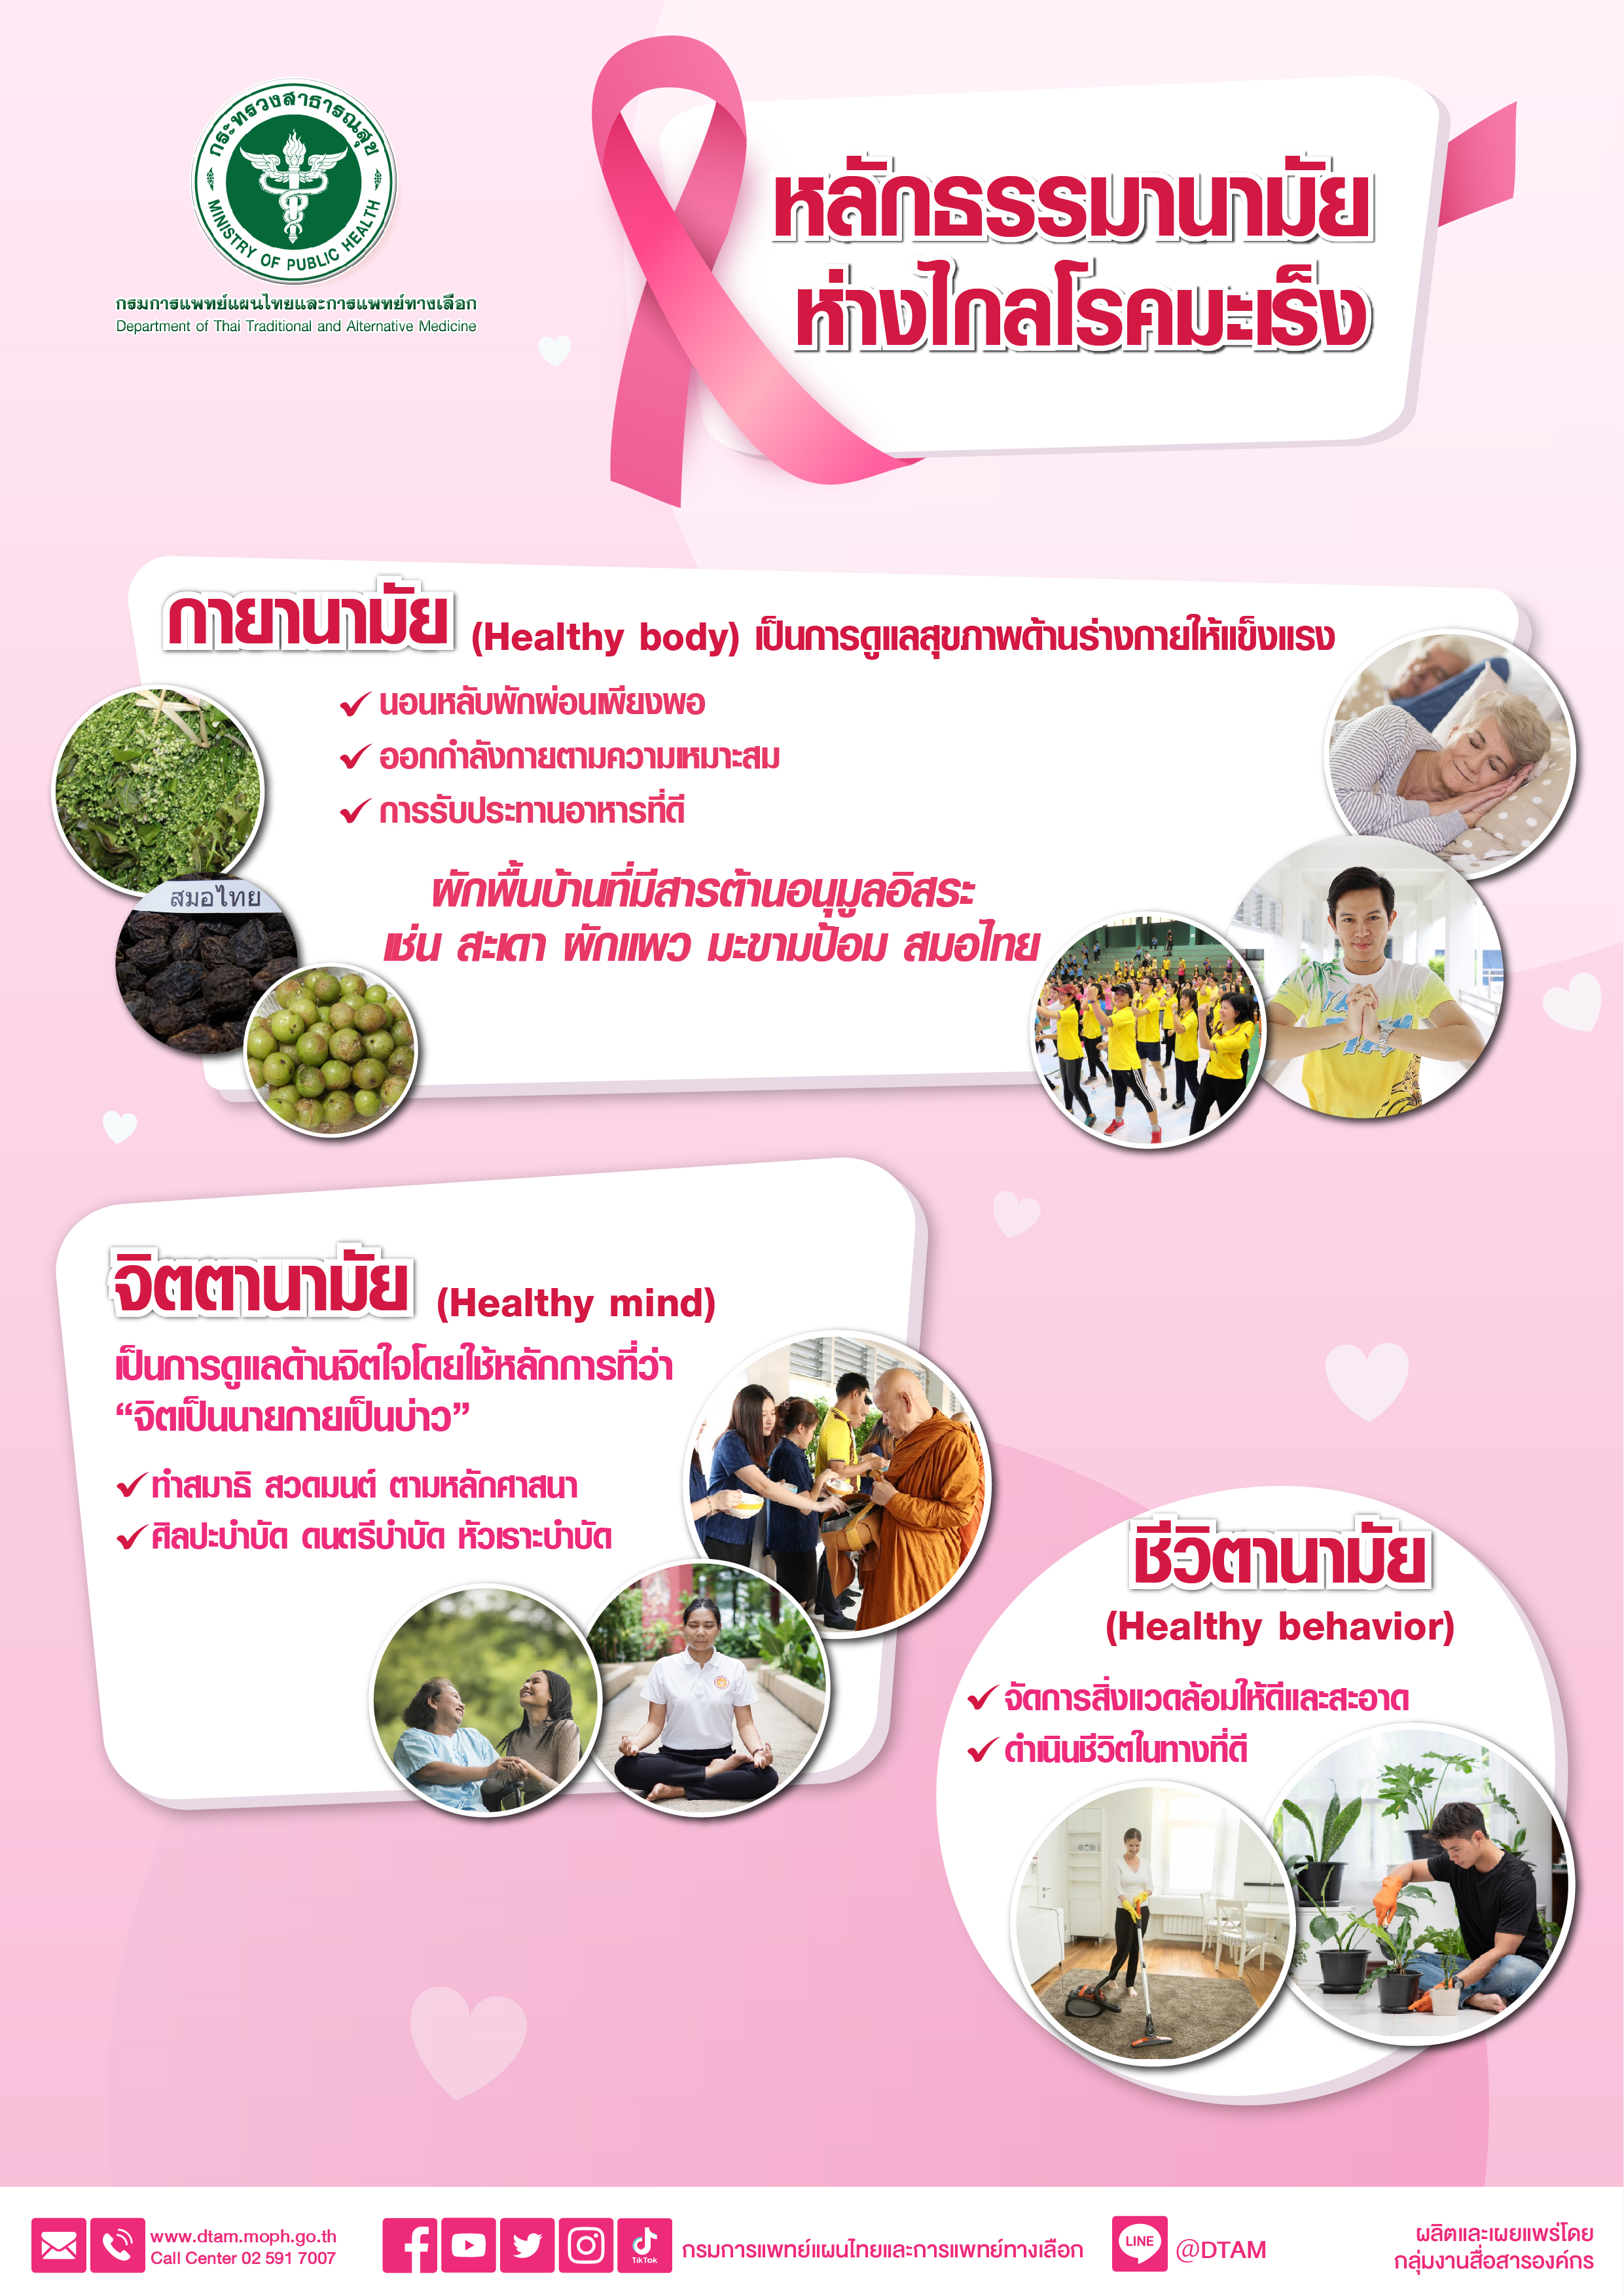 กรมการแพทย์แผนไทยฯ แนะนำการดูแลสุขภาพตามหลักธรรมานามัย ห่างไกลโรคมะเร็ง